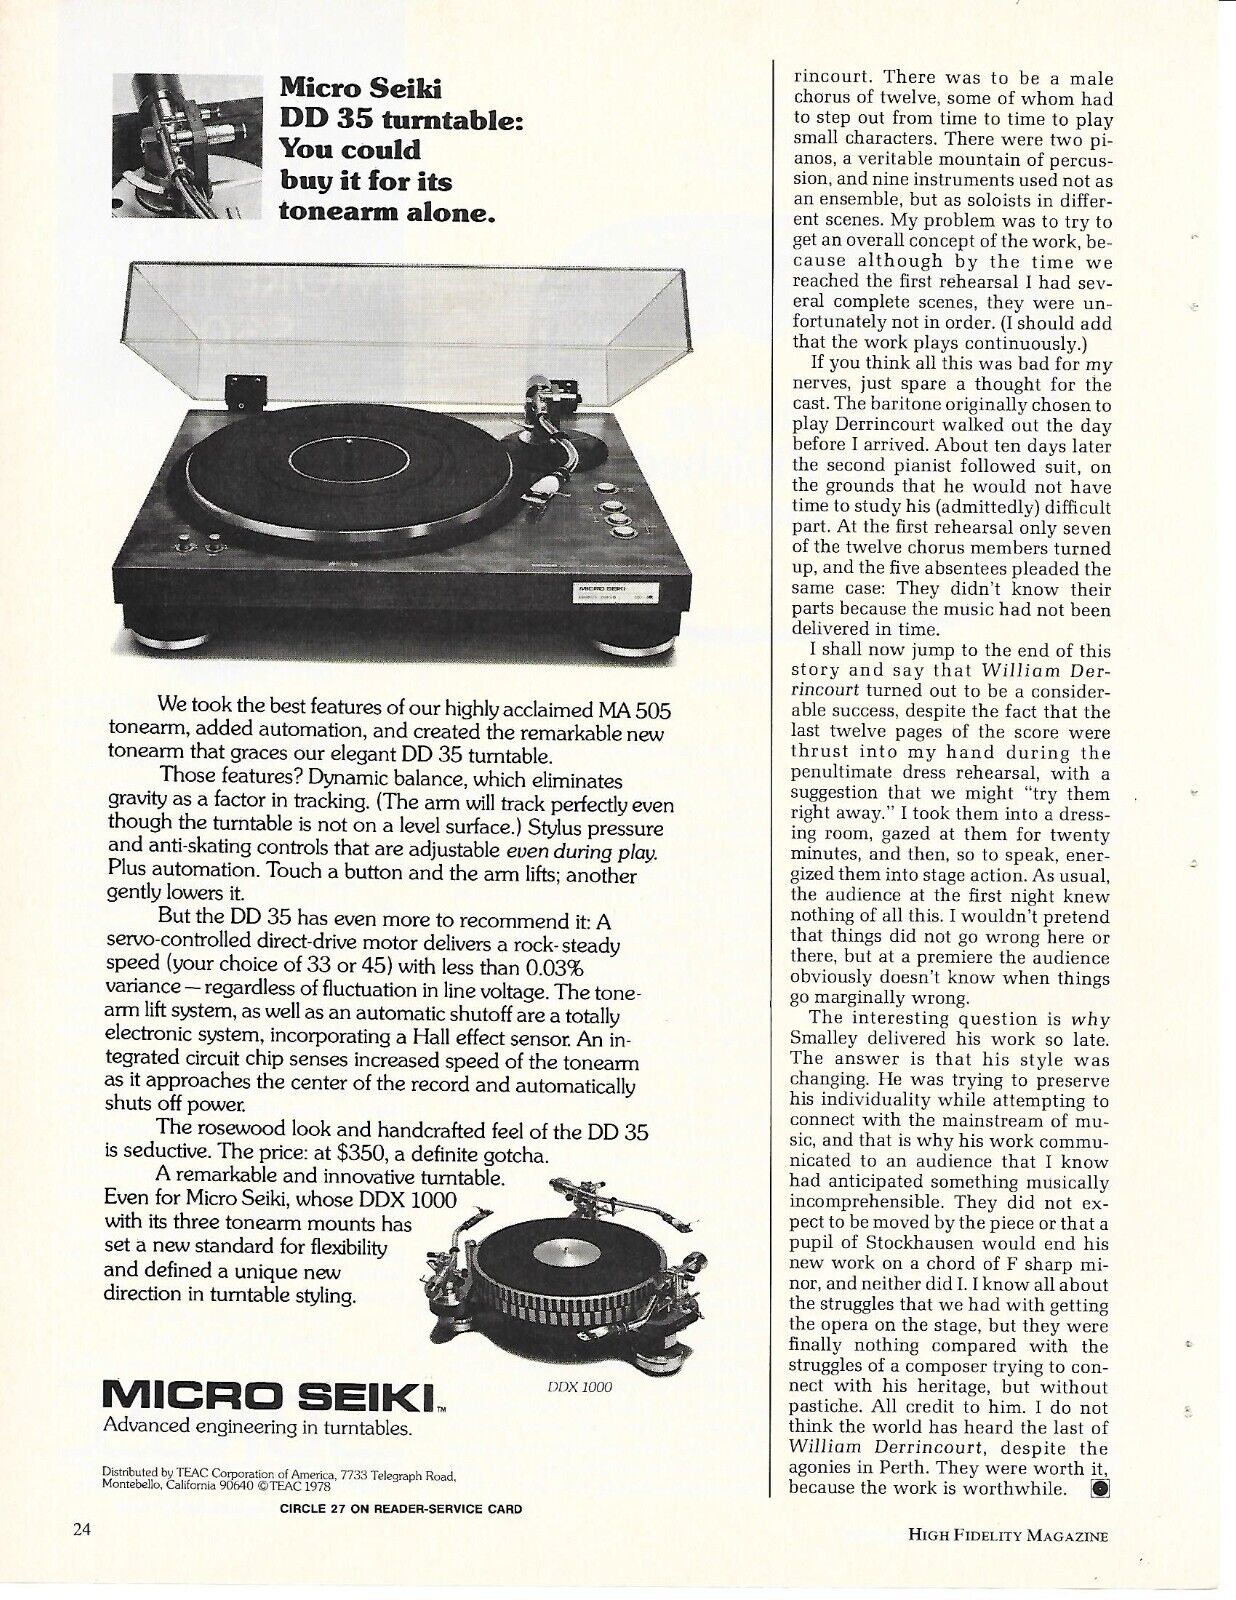 Vintage Micro Seiki MA 505  & DDX 1000 Turntables - 03/1978